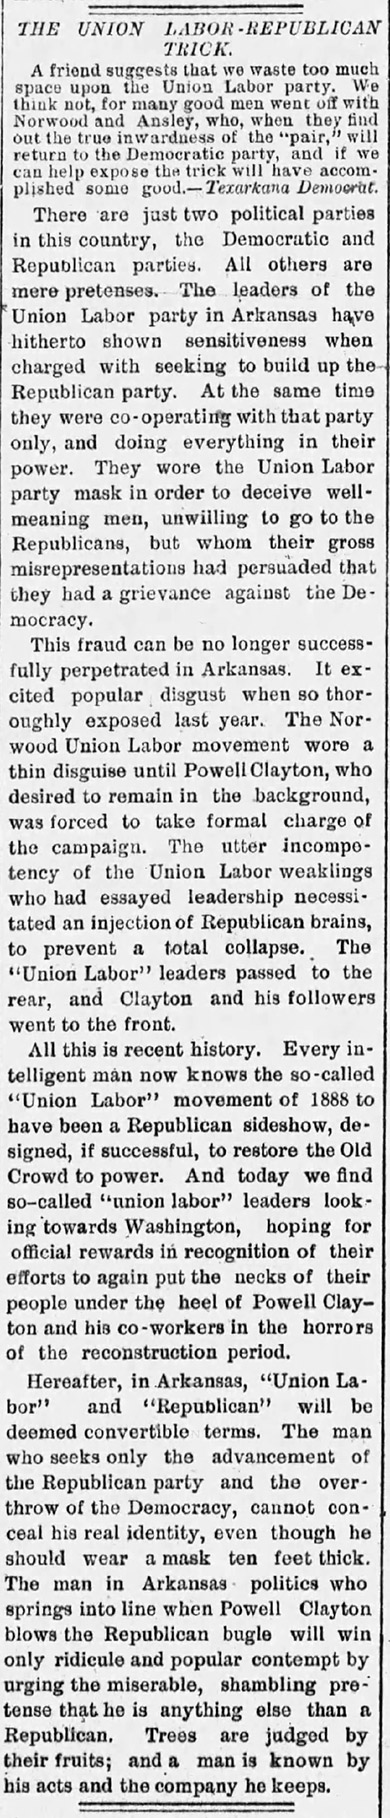 "The Union Labor-Republican Trick" newspaper clipping